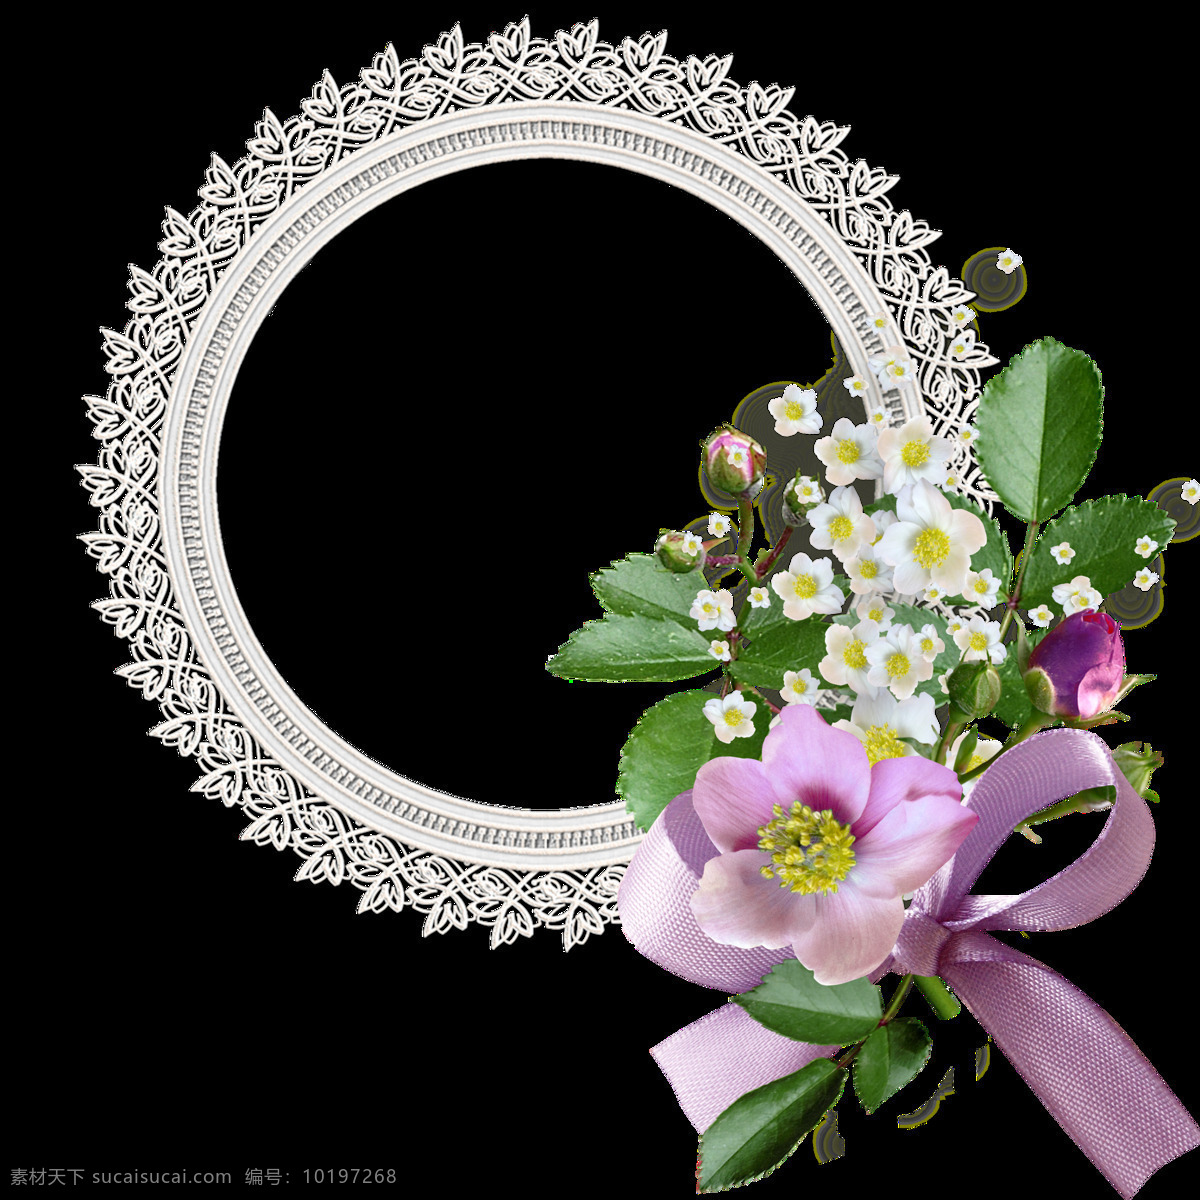 原创 自制 婚礼 花束 透明 紫色 小白花 花蕊 丝带 透明素材 免扣素材 装饰图片